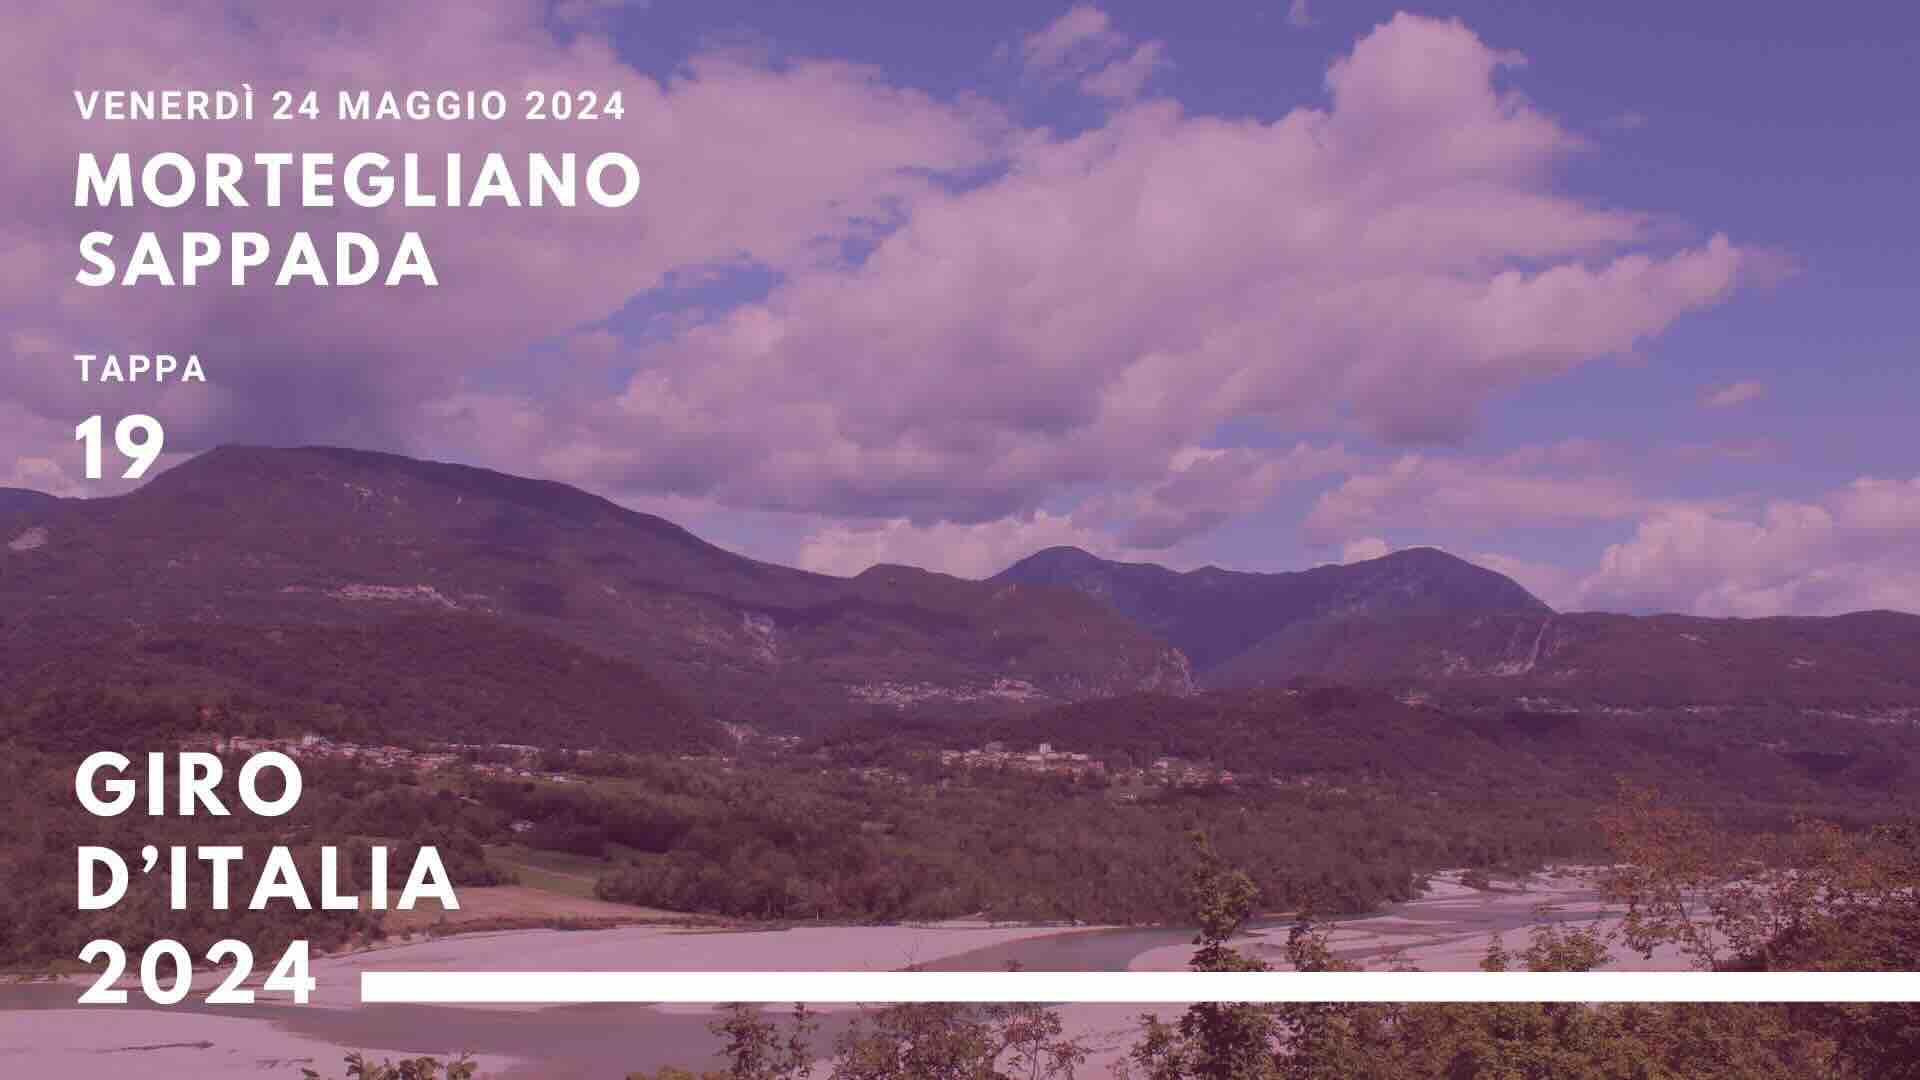 Giro D’Italia a Mortegliano Sappada in Friuli  strade chiuse